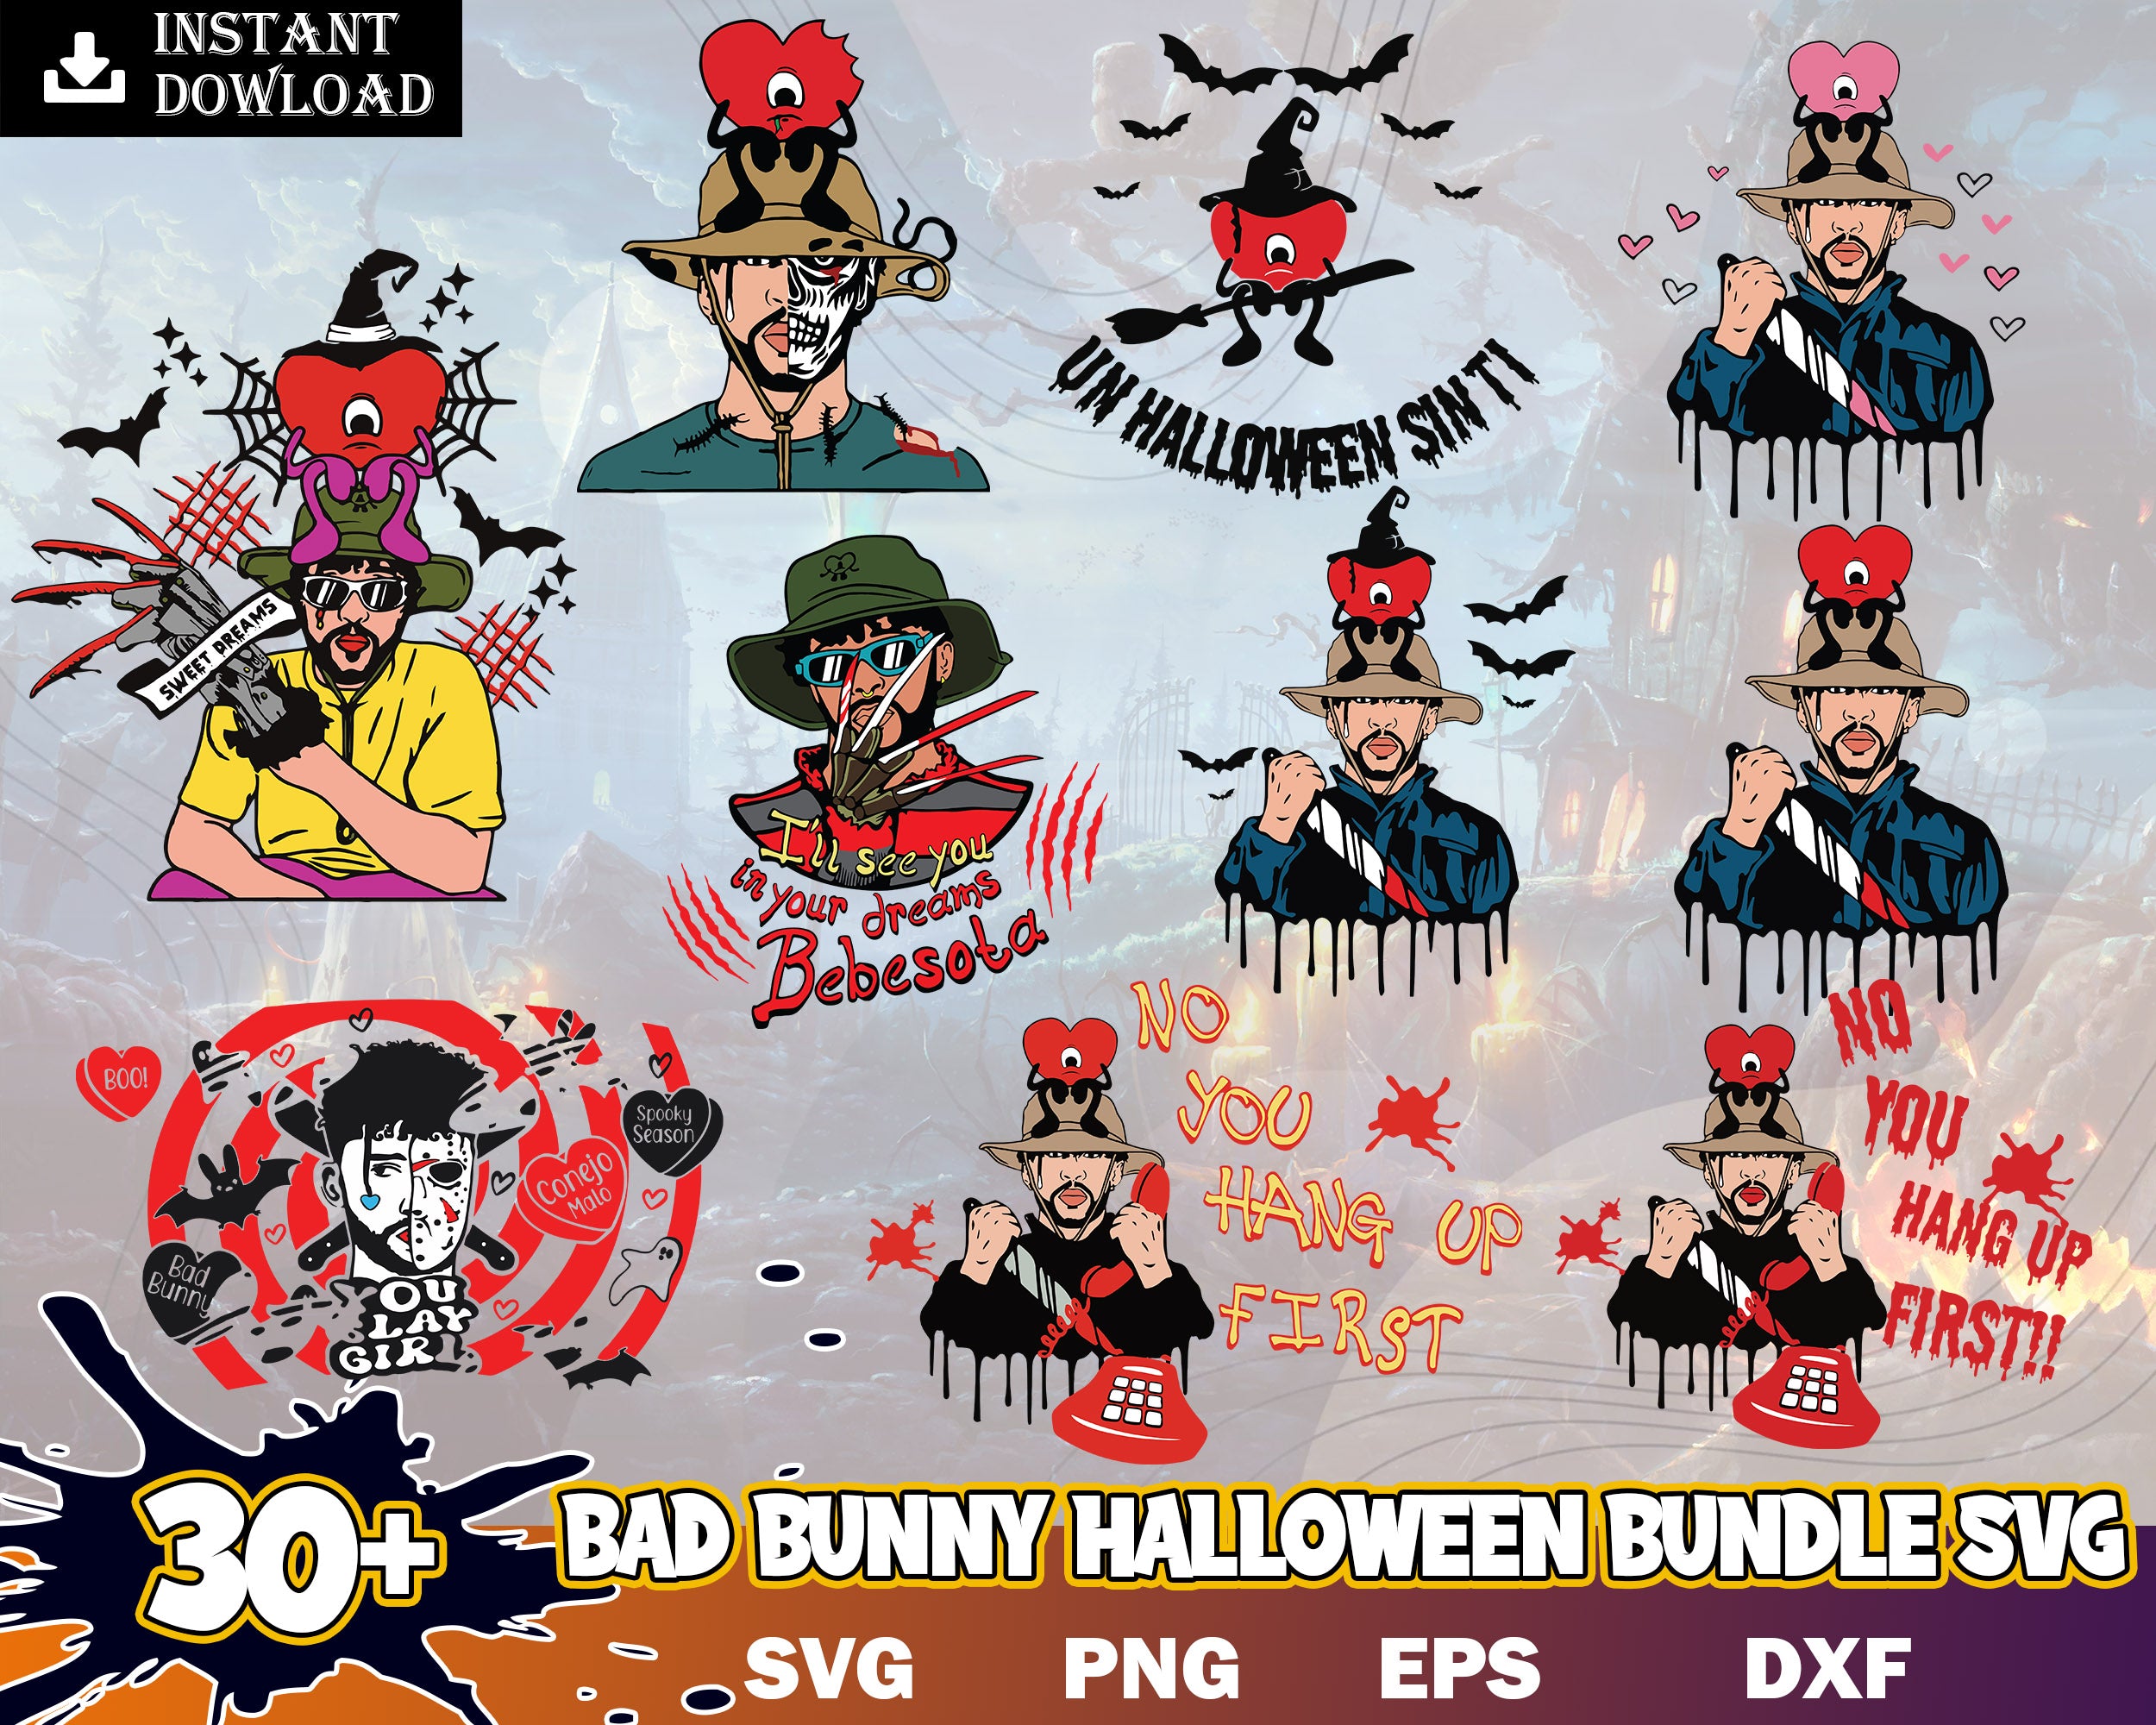 30+ Bad Bunny Halloween, Bad Bunny Horror SVG, Bad Bunny svg, Freddy Kruger svg, Digital download.